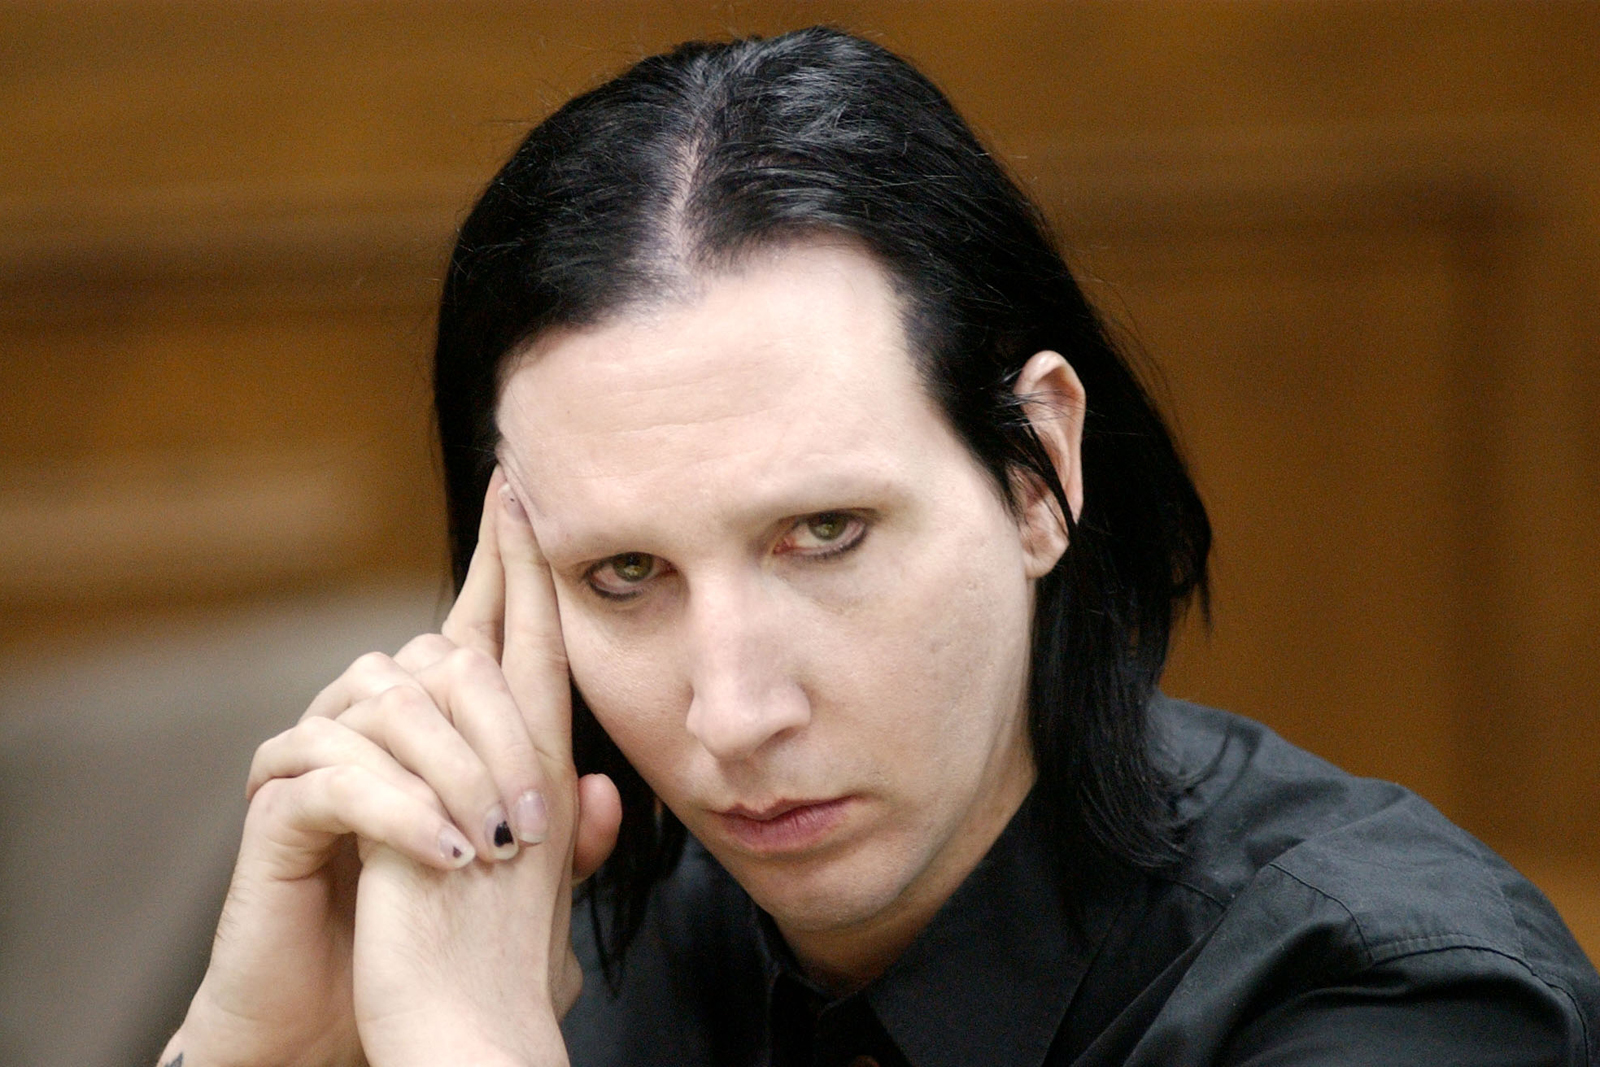 Macintosh HD:Users:brittanyloeffler:Downloads:Upwork:Marilyn Manson:12-manson-at-court-hearing.jpg